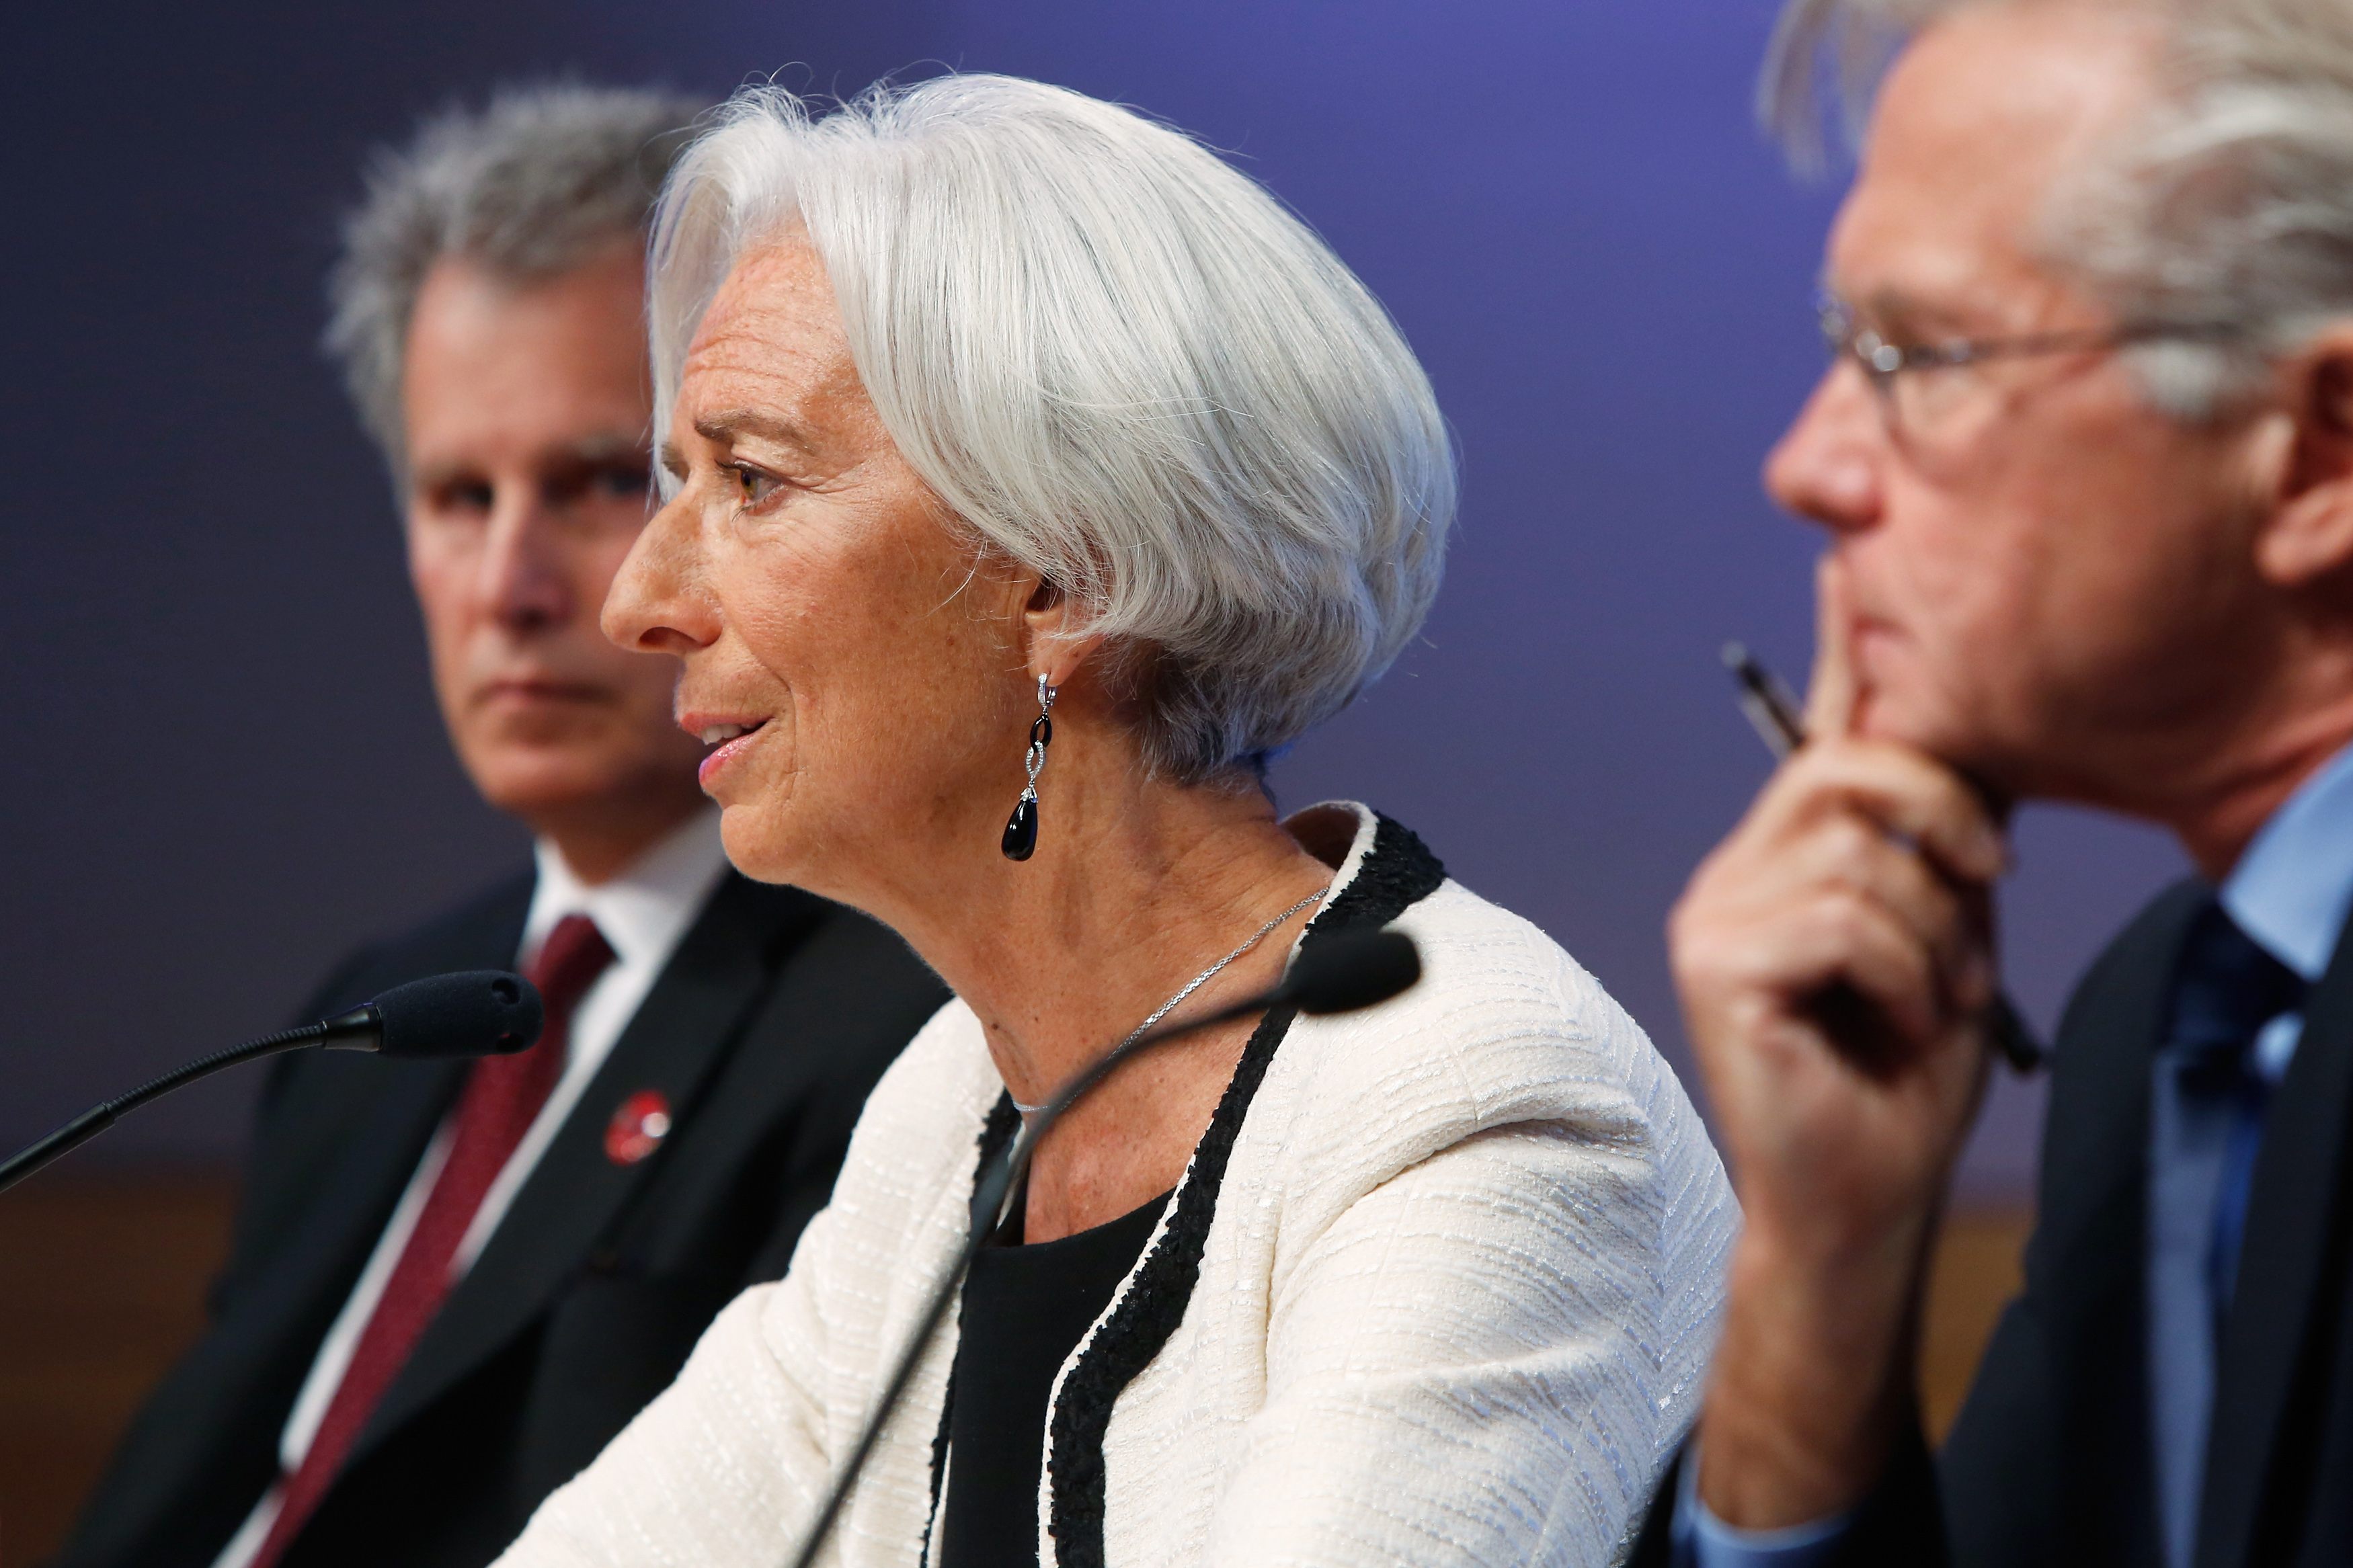 ΔΝΤ: Tα stress tests των τραπεζών είναι ένα σημαντικό πρώτο βήμα